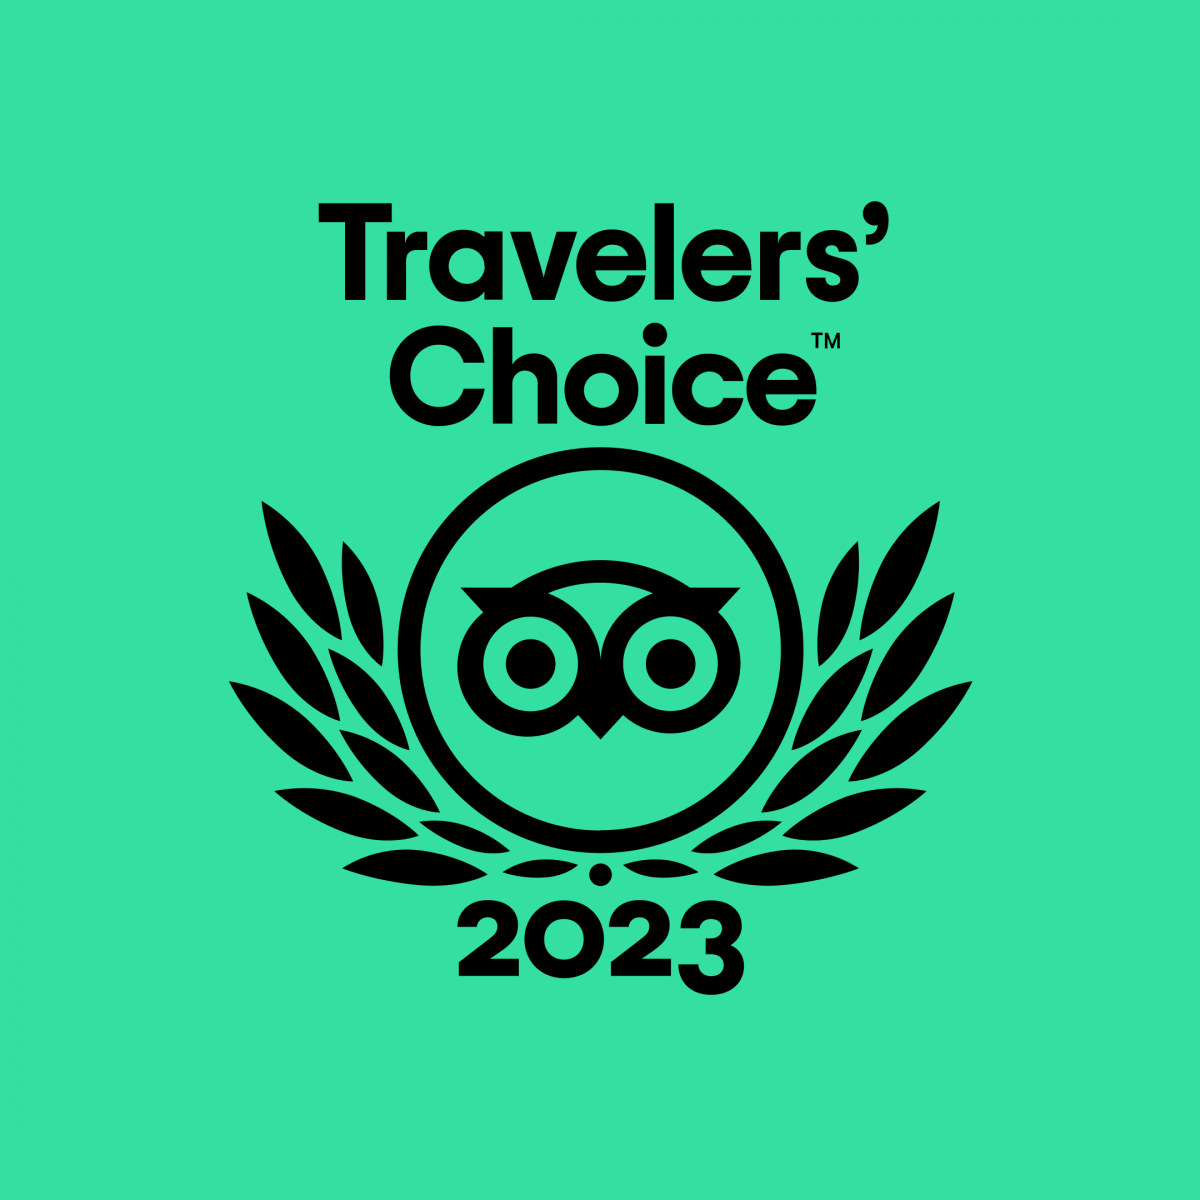 TripAdvisor Travelers' Choice Award 2020